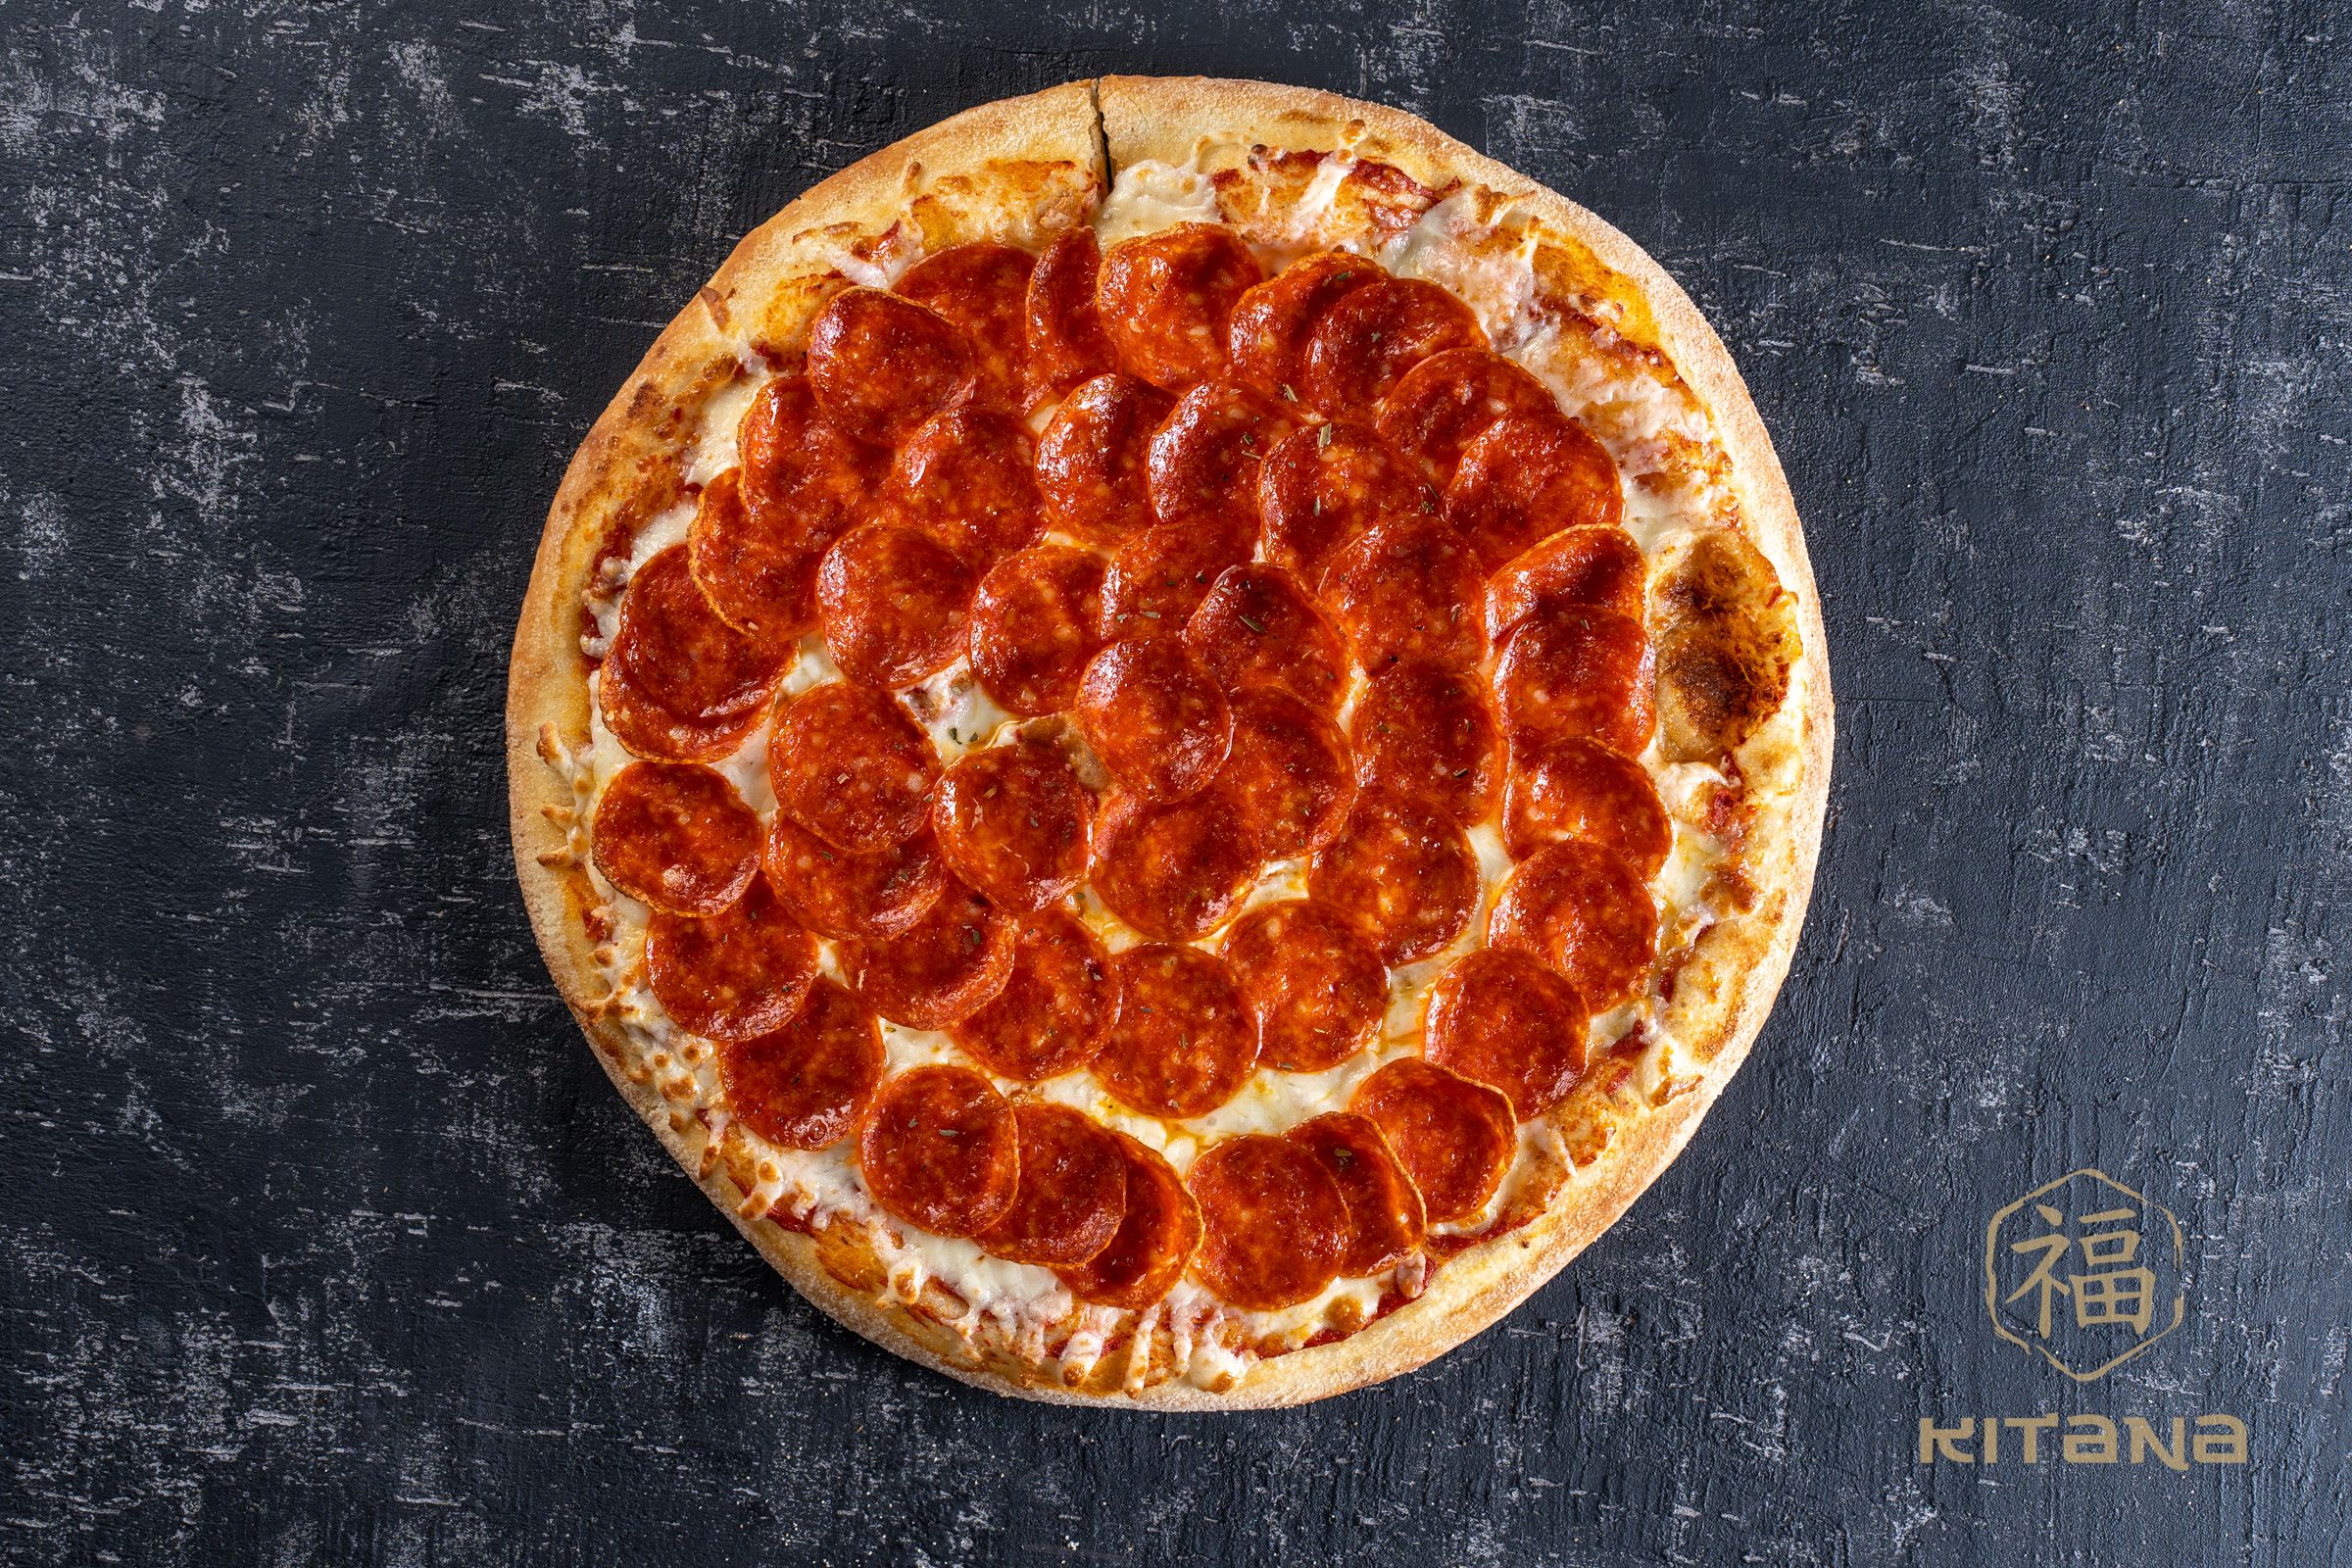 сколько калорий в одном кусочке пиццы пепперони додо фото 112